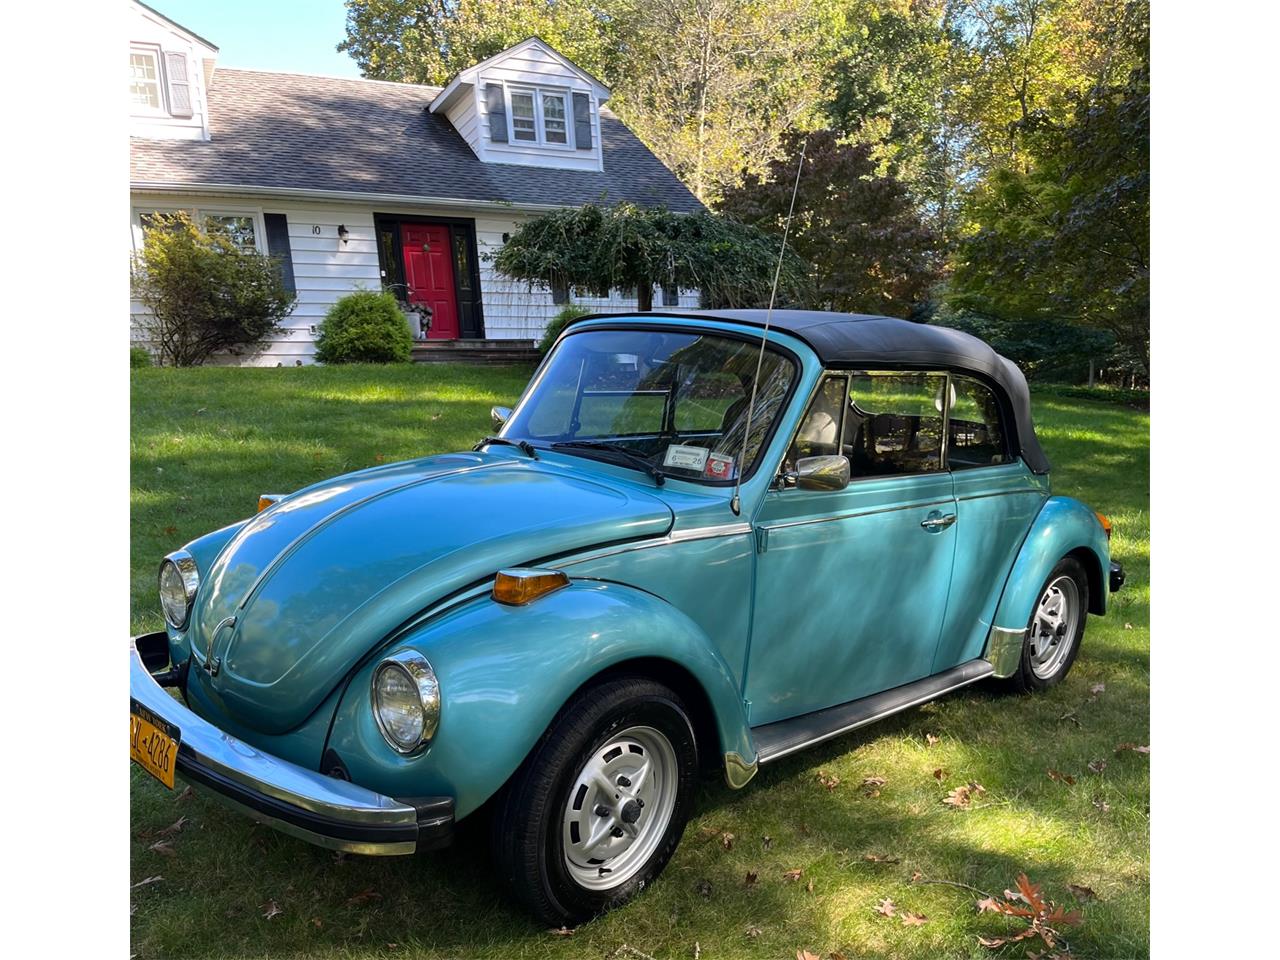 For Sale: 1979 Volkswagen Super Beetle in Katonah, New York for sale in Katonah, NY